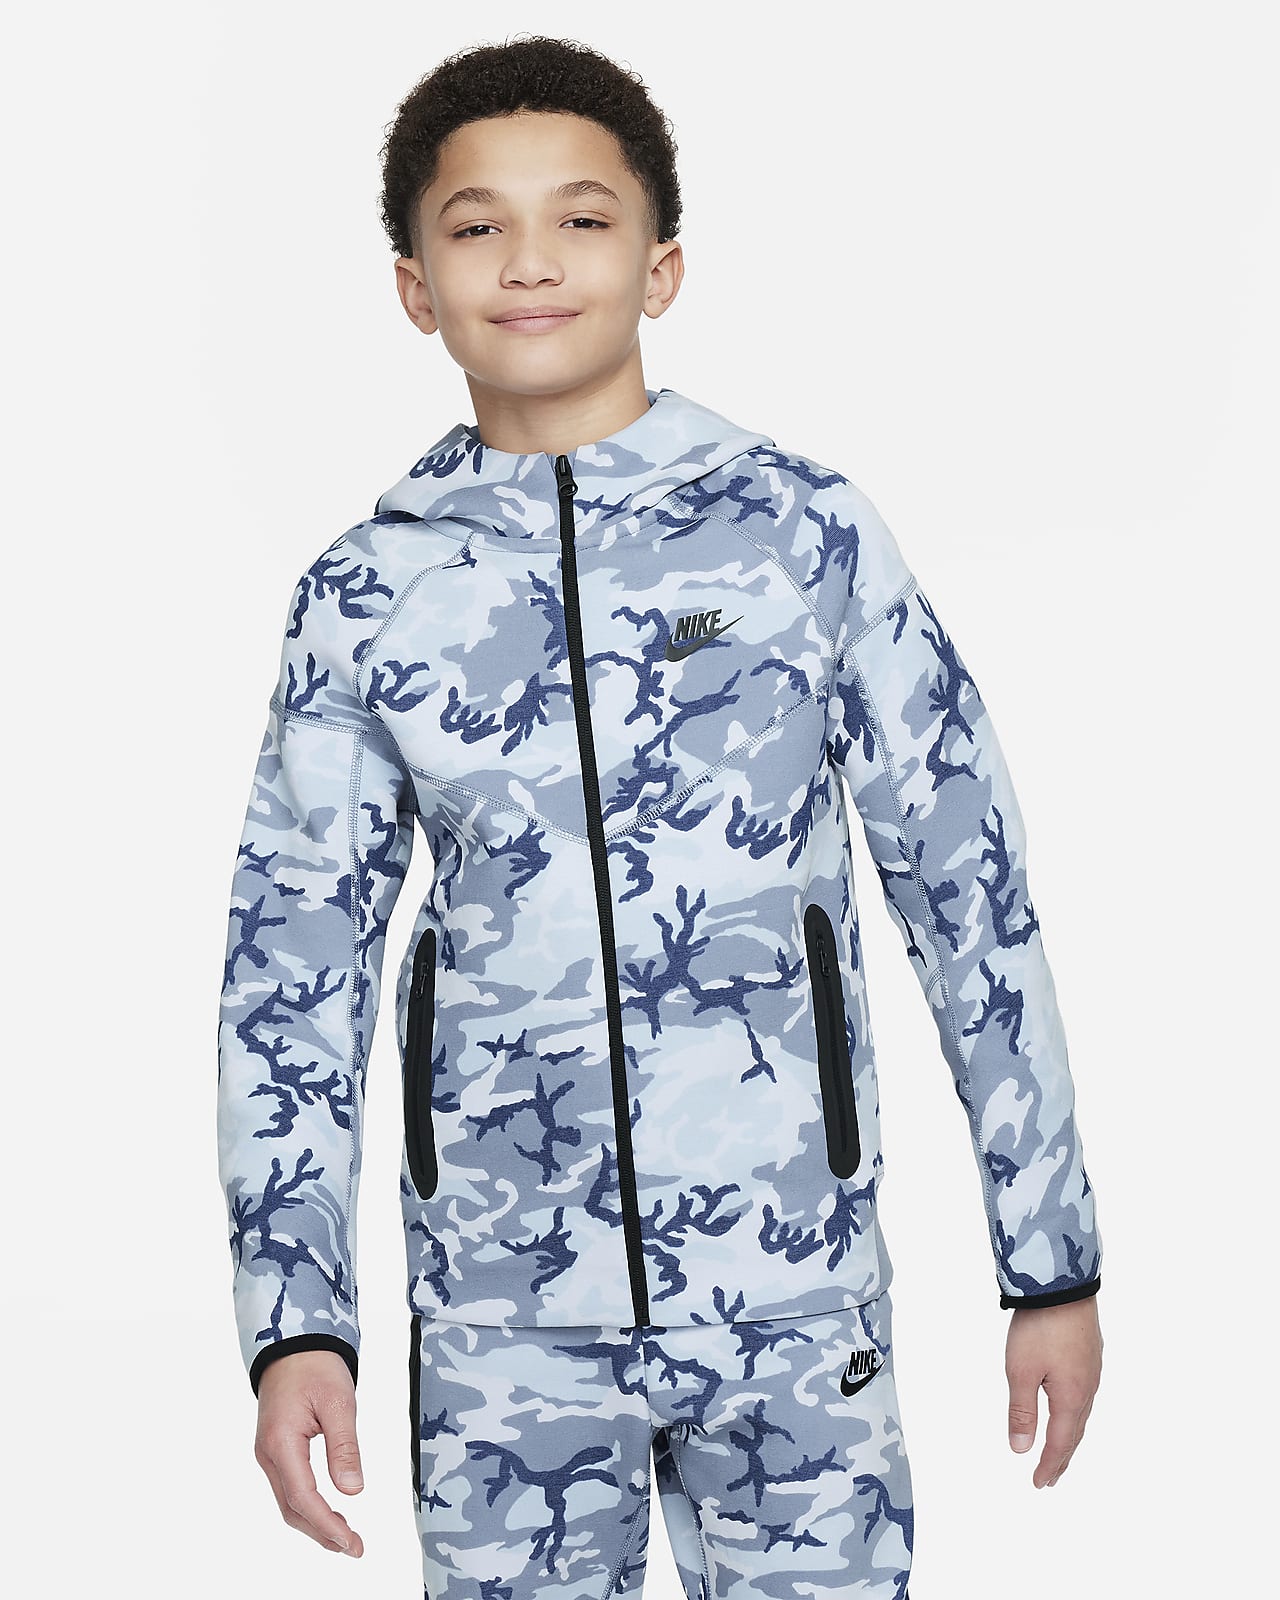 Bluza z kapturem i zamkiem na całej długości ze wzorem moro dla dużych dzieci (chłopców) Nike Tech Fleece